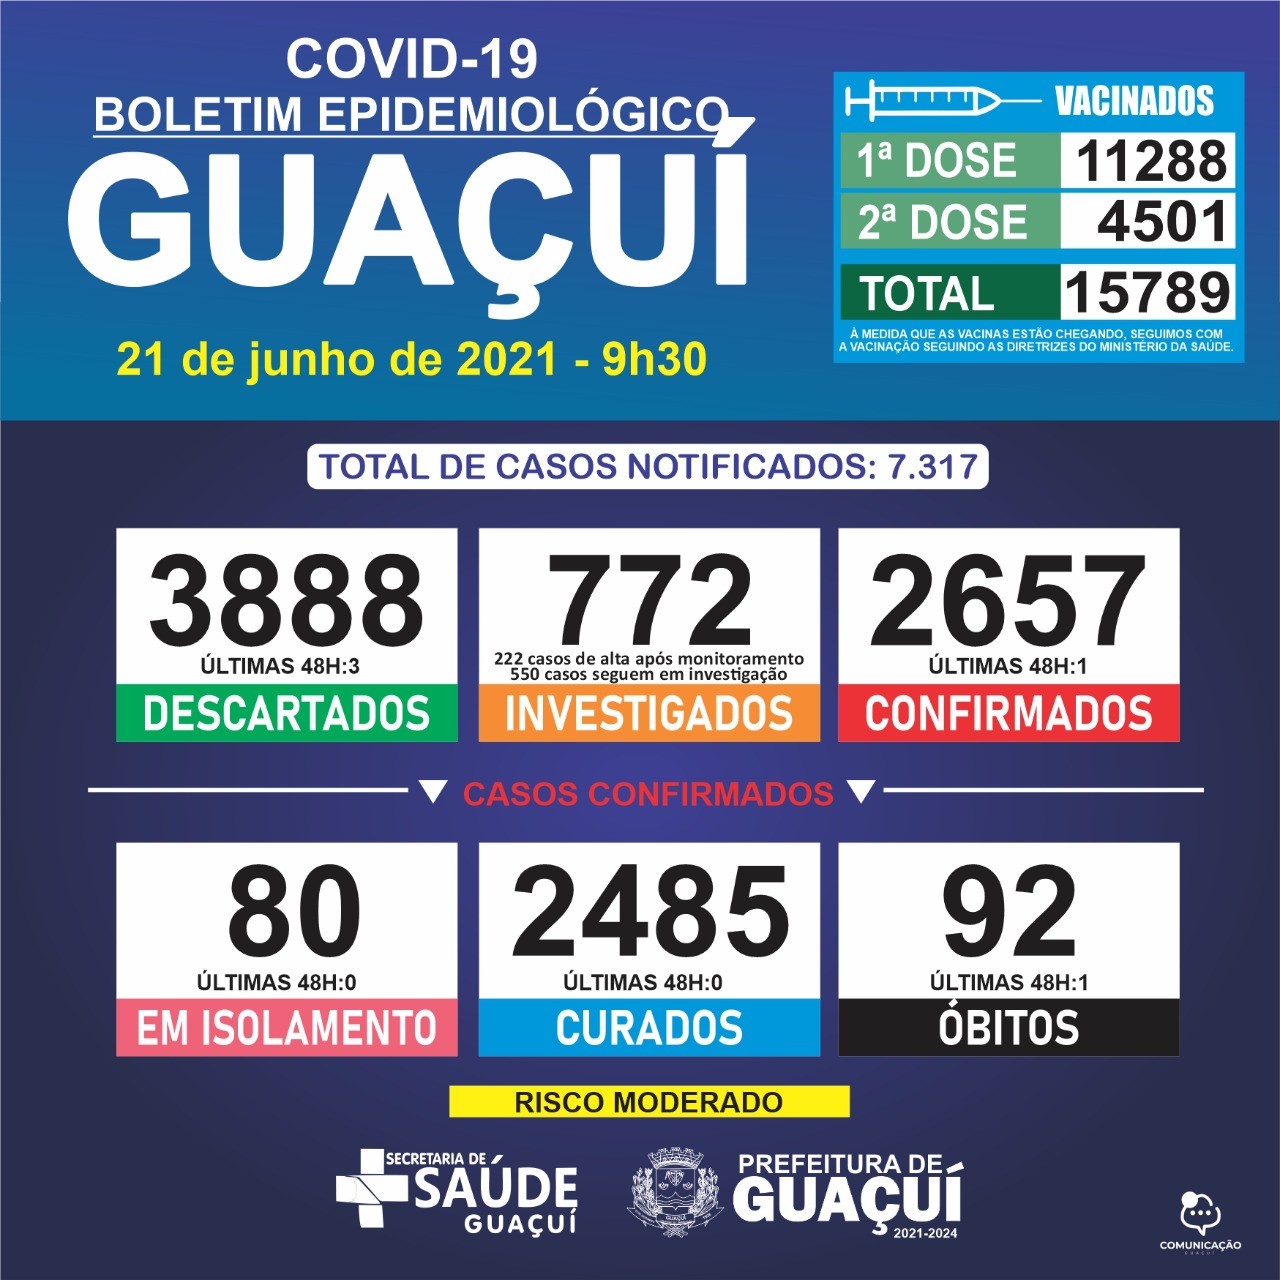 Boletim Epidemiológico 21/06/21: Guaçuí registra 1 óbito e 1 caso confirmado nas últimas 48 horas